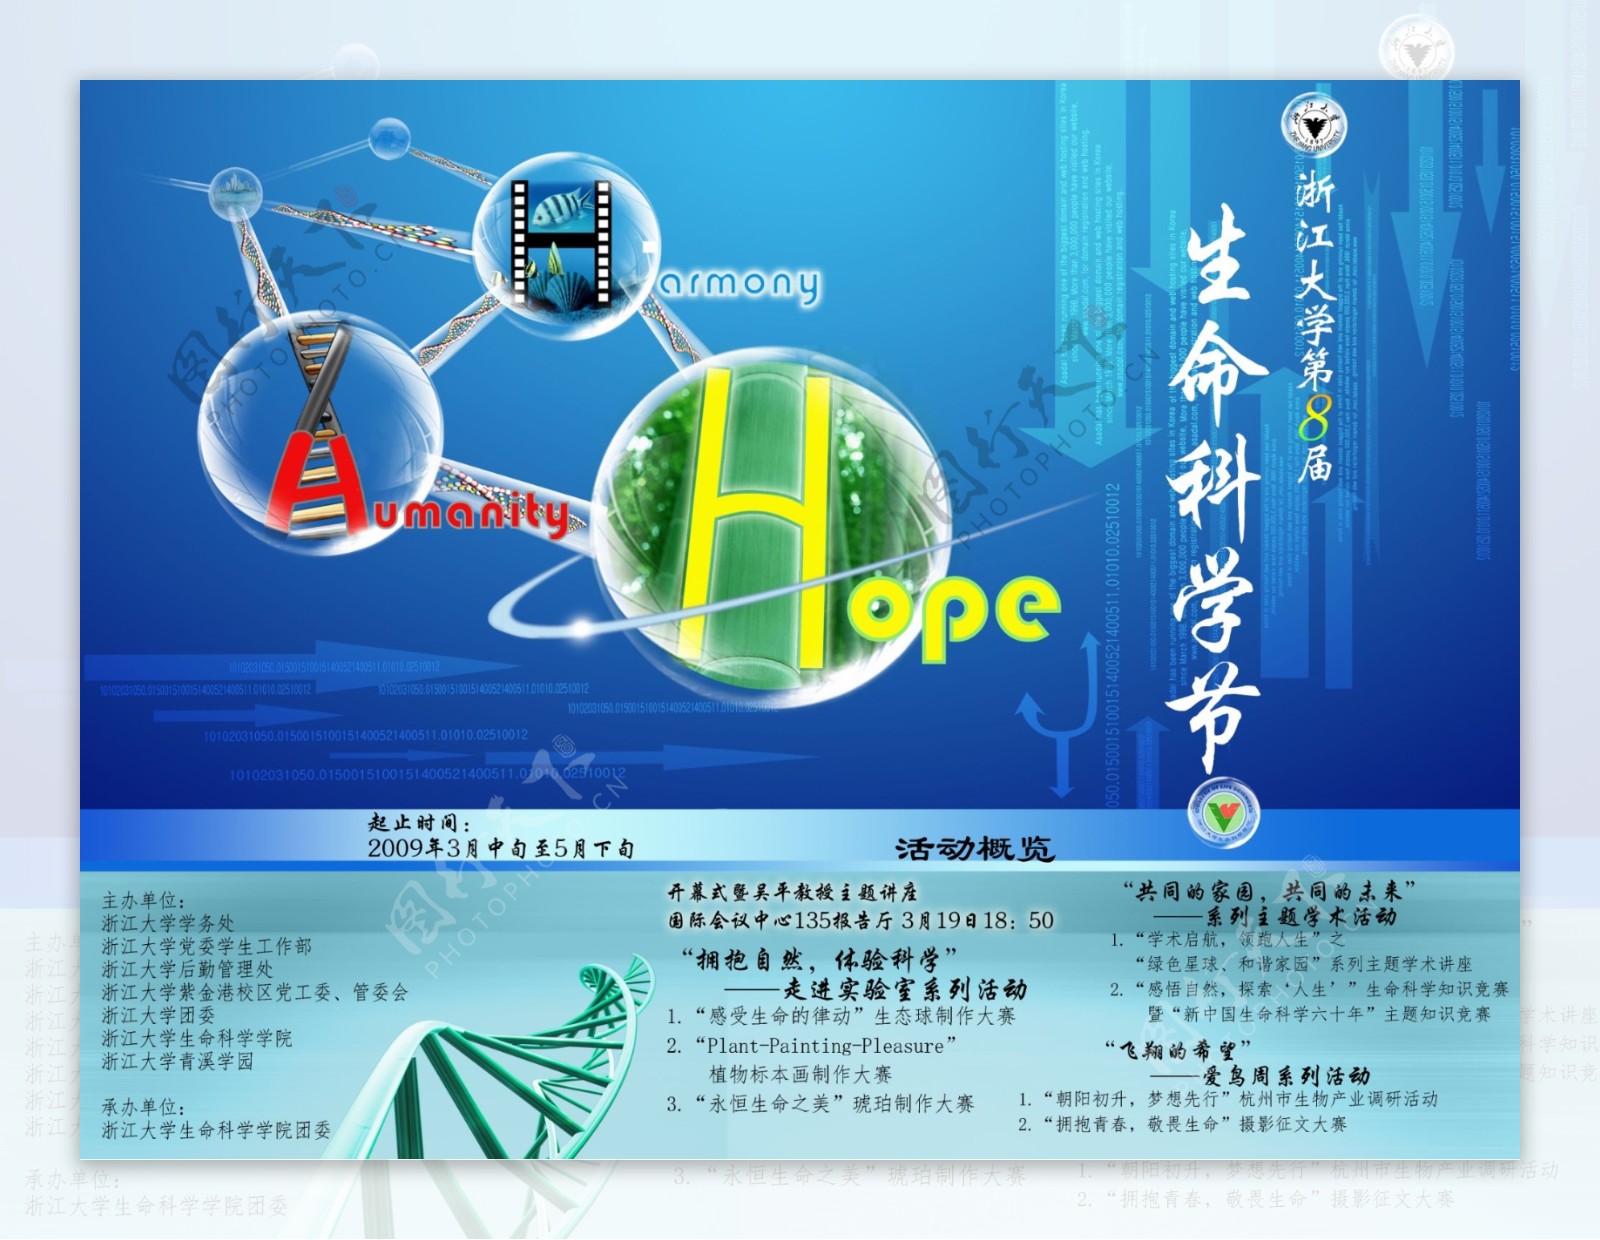 浙江大学生命科学节喷绘图片